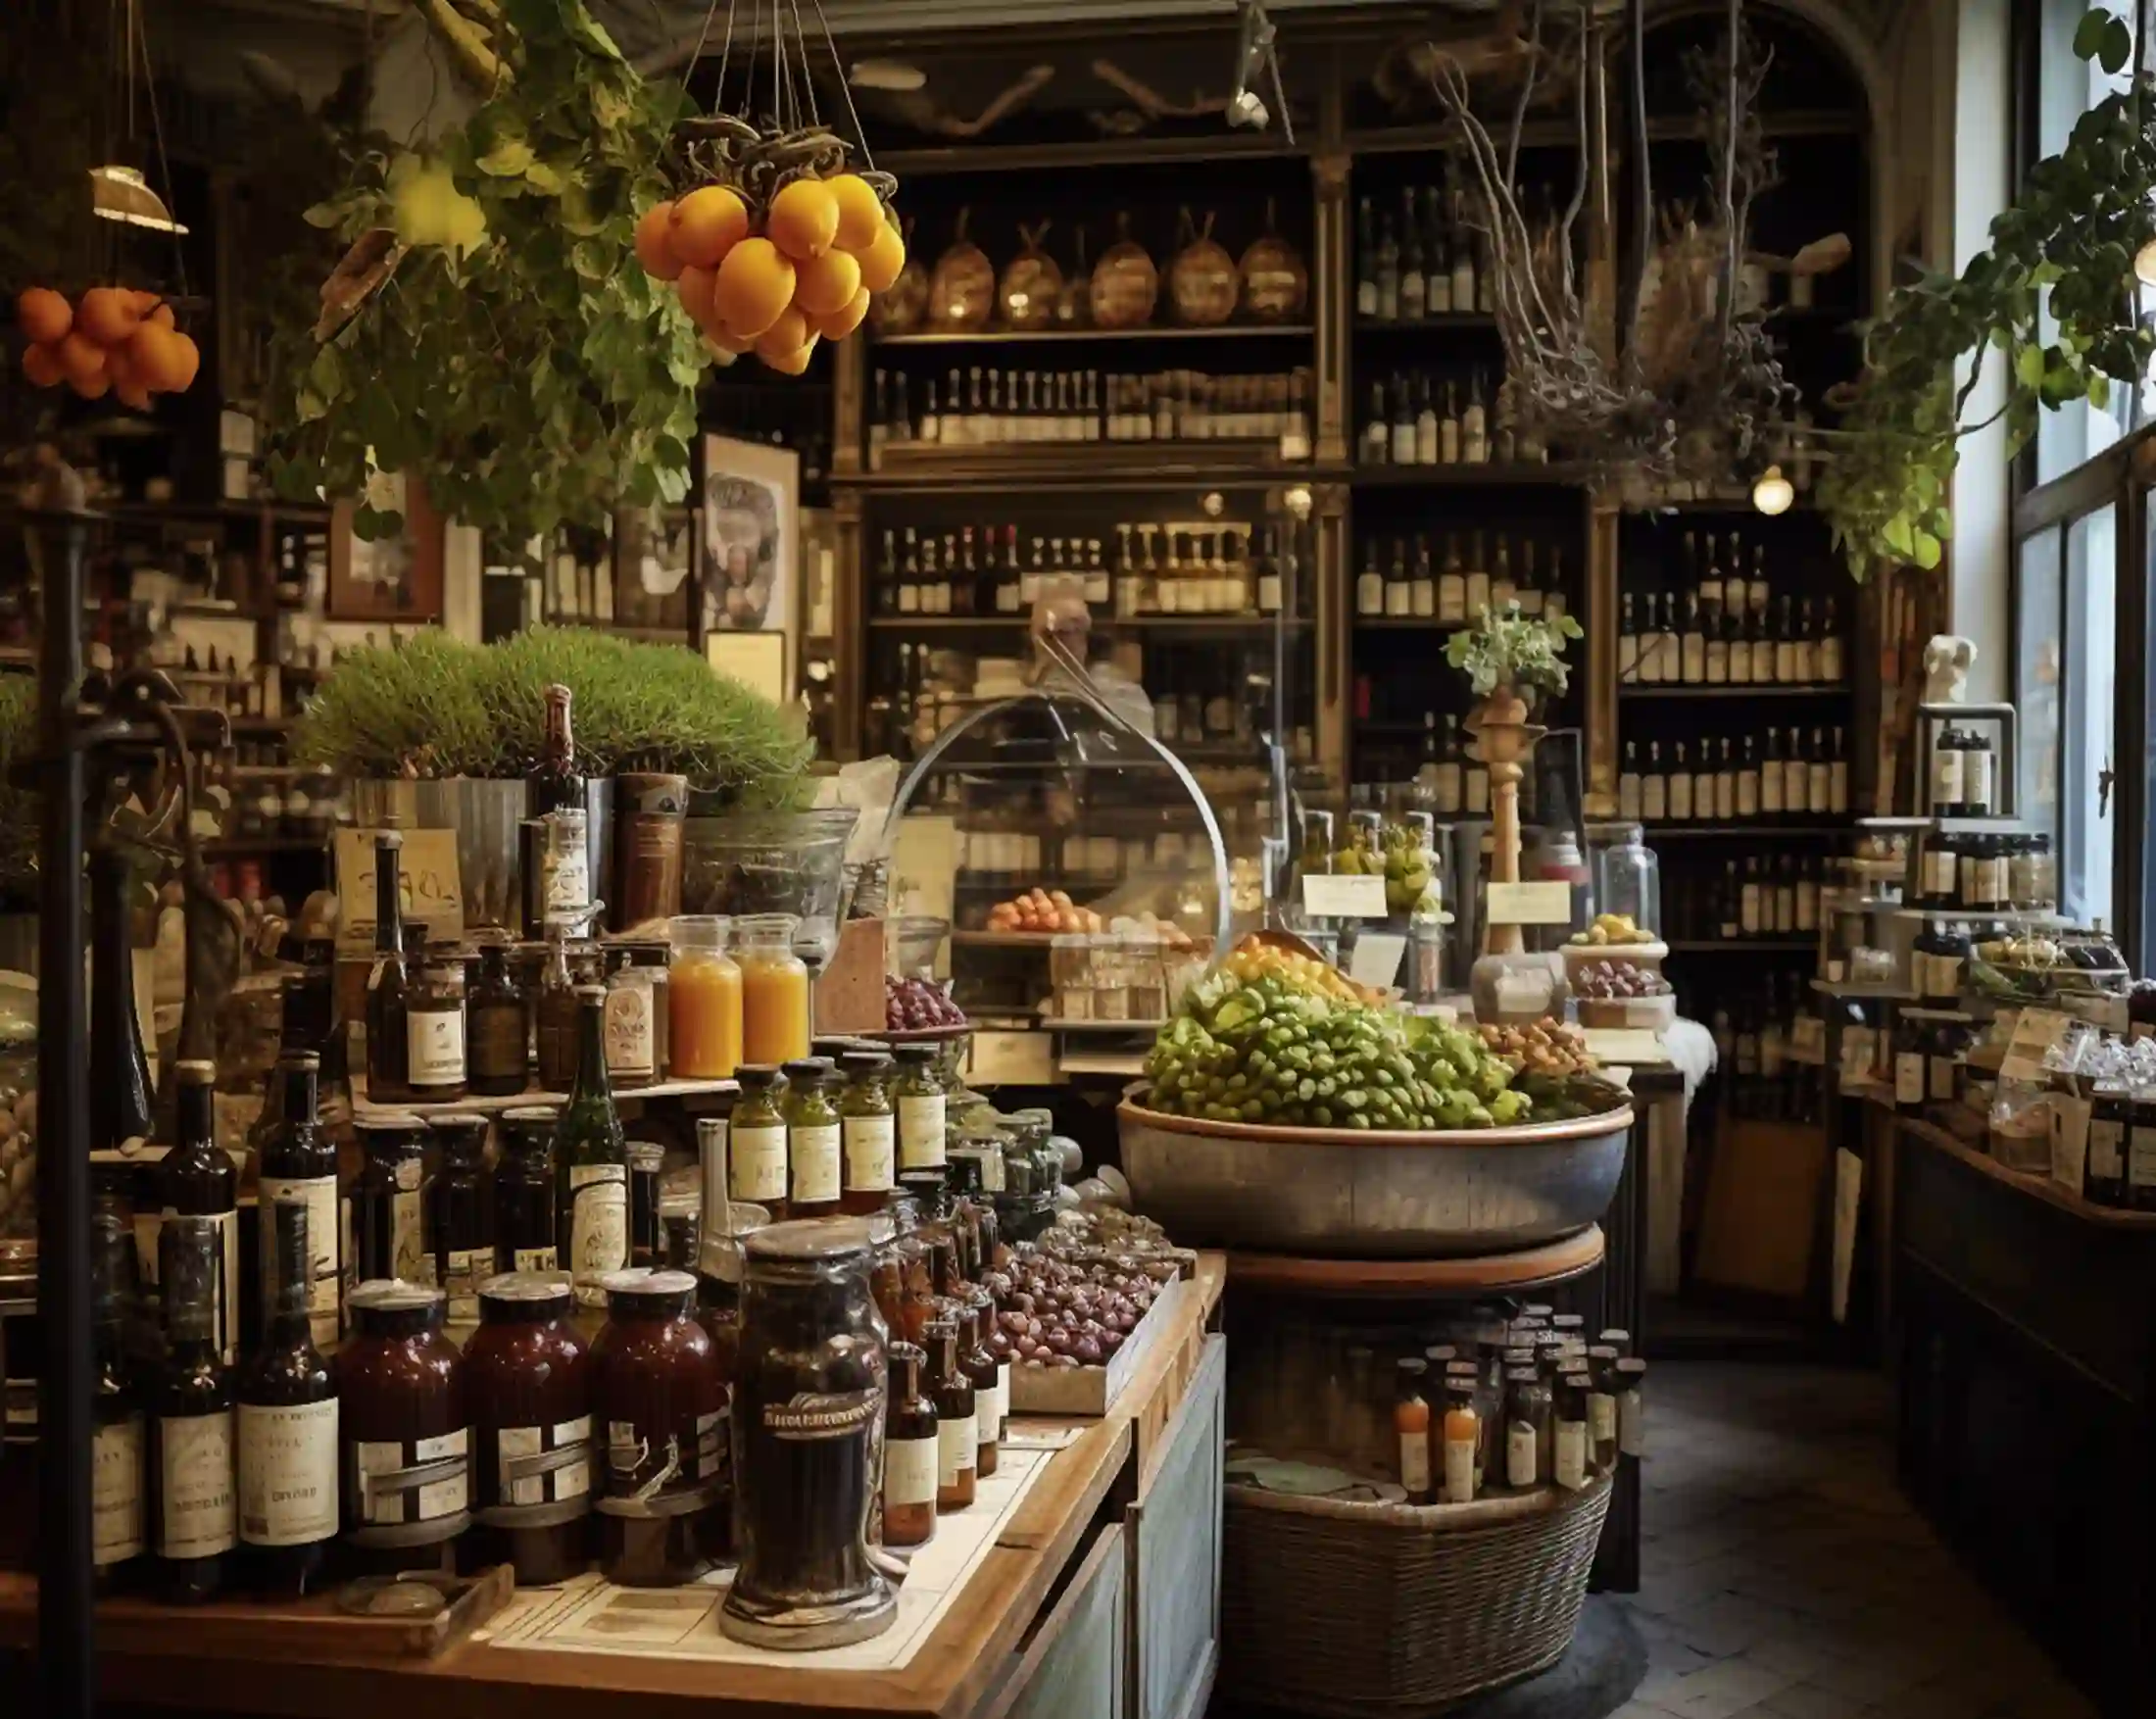 Feinkostgeschäft in Paris. Oliven kaufen und Olivenöl kaufen ist hier im Fokus. Daneben kann an der Kasse auch Olivenöl bestellen oder Oliven bestellen durchgeführt werden.